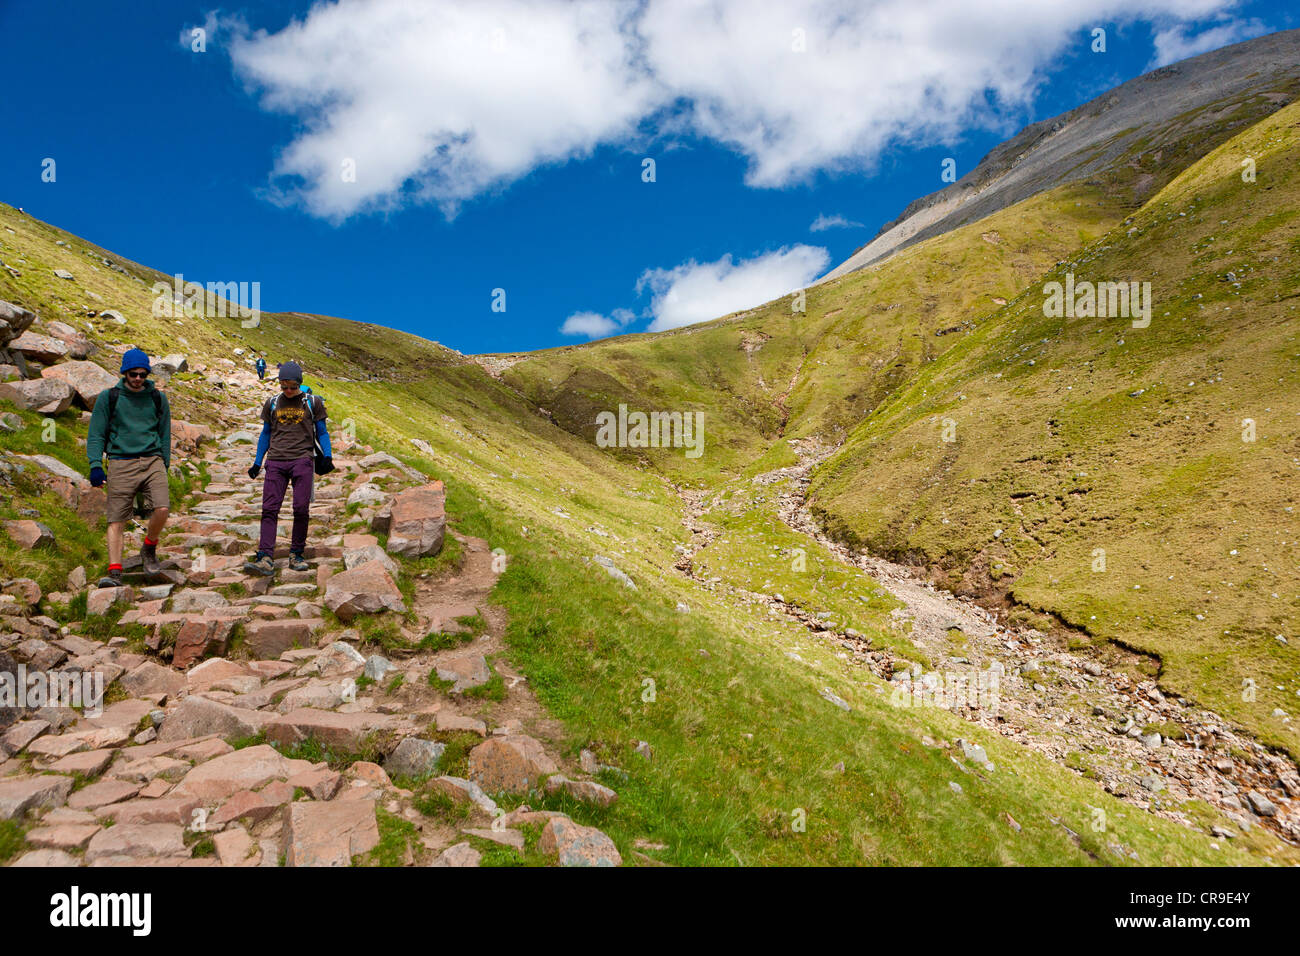 Ruta de senderismo hasta el Ben Nevis, el pico más alto de Escocia en 1344 metros, Lochaber, Escocia Foto de stock